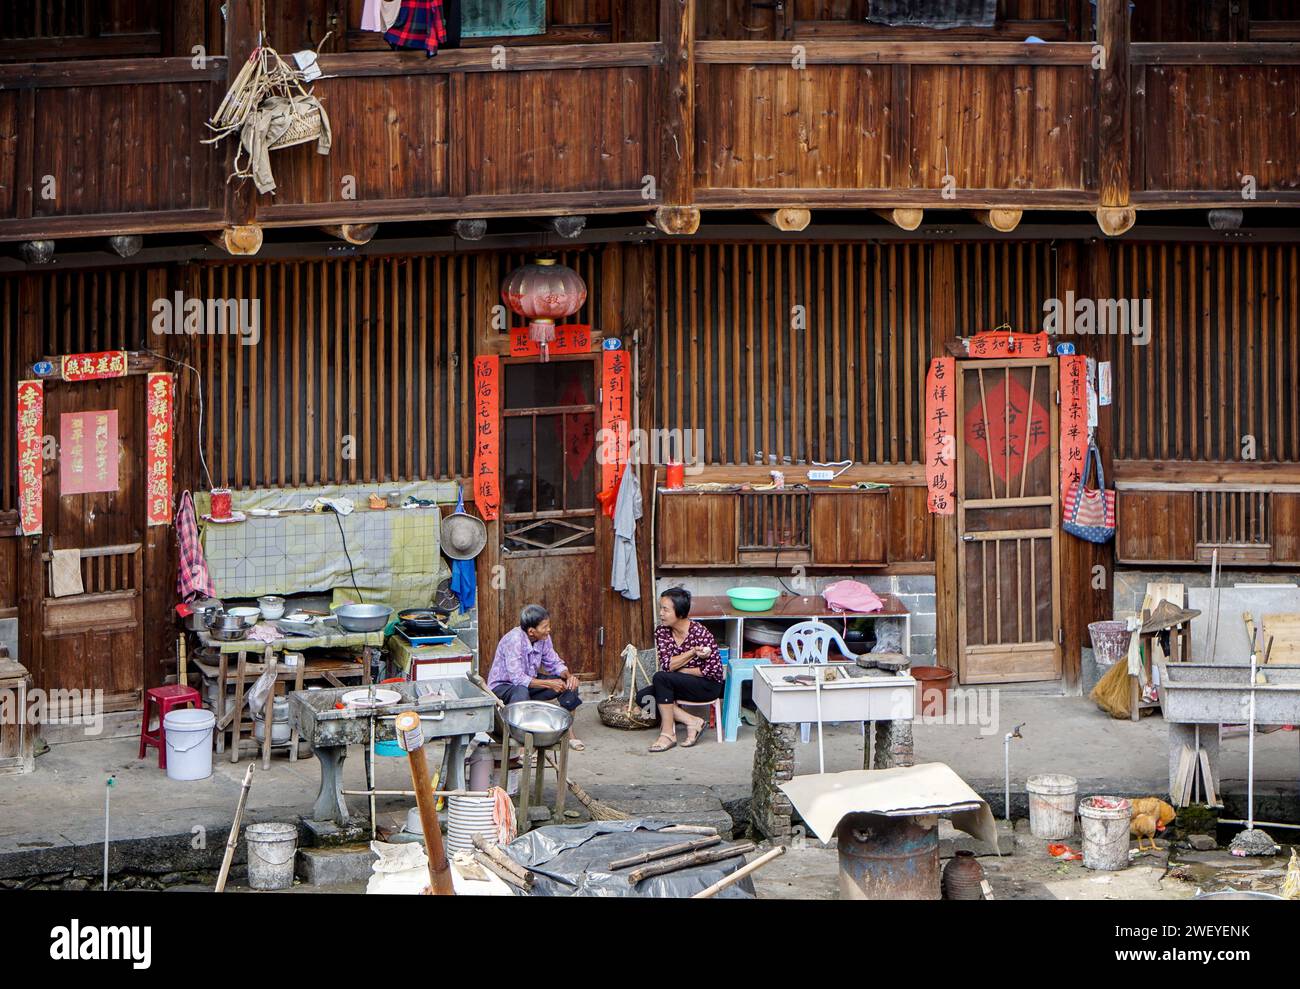 Cuisine en plein air dans la cour d'un Tulou (bâtiment en terre battue et bois) dans le village de Hekeng, comté de Nanjing, province du Fujian, Chine Banque D'Images